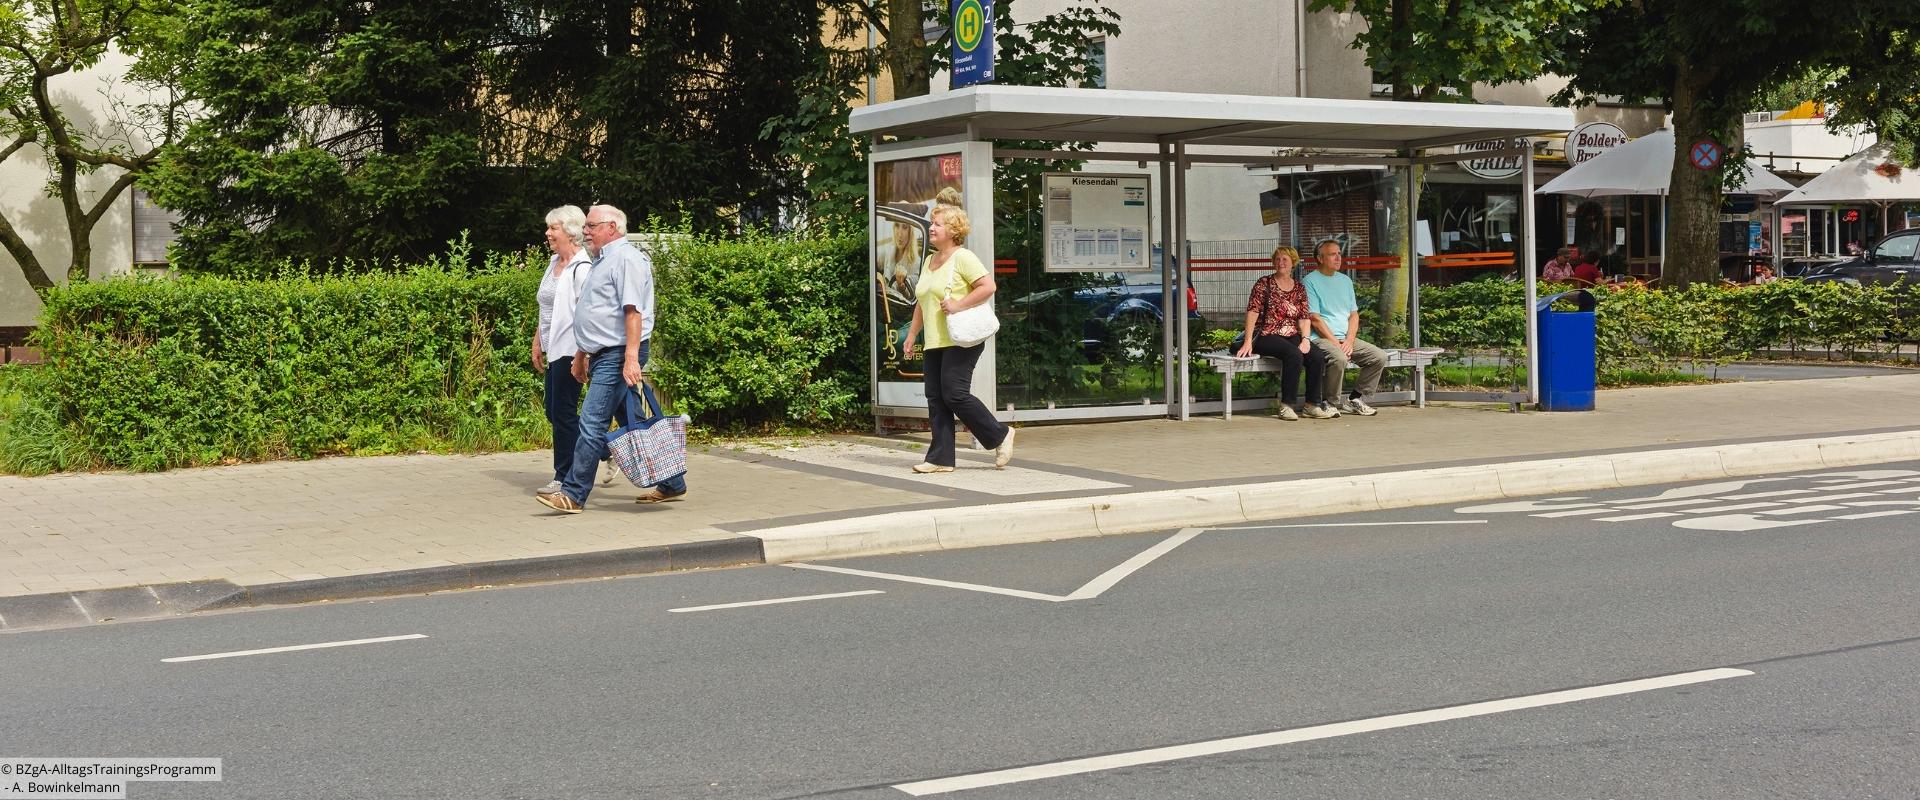 2 ältere Menschen sitzen an Bushaltestelle, 3 weitere laufen daran vorbei